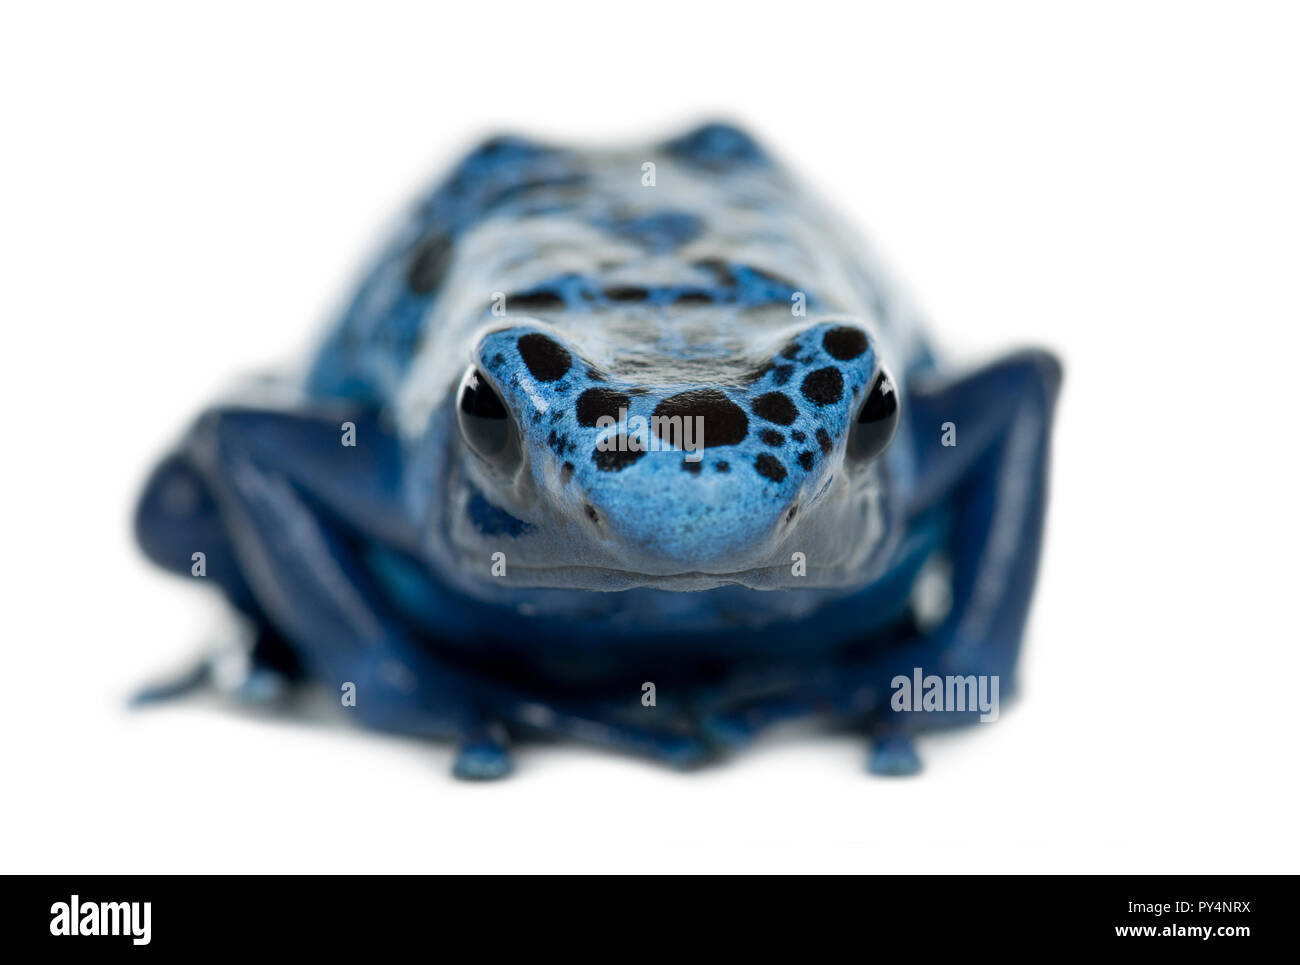 Blu e nero Poison Dart Frog, Dendrobates azureus, ritratto contro uno sfondo bianco Foto Stock